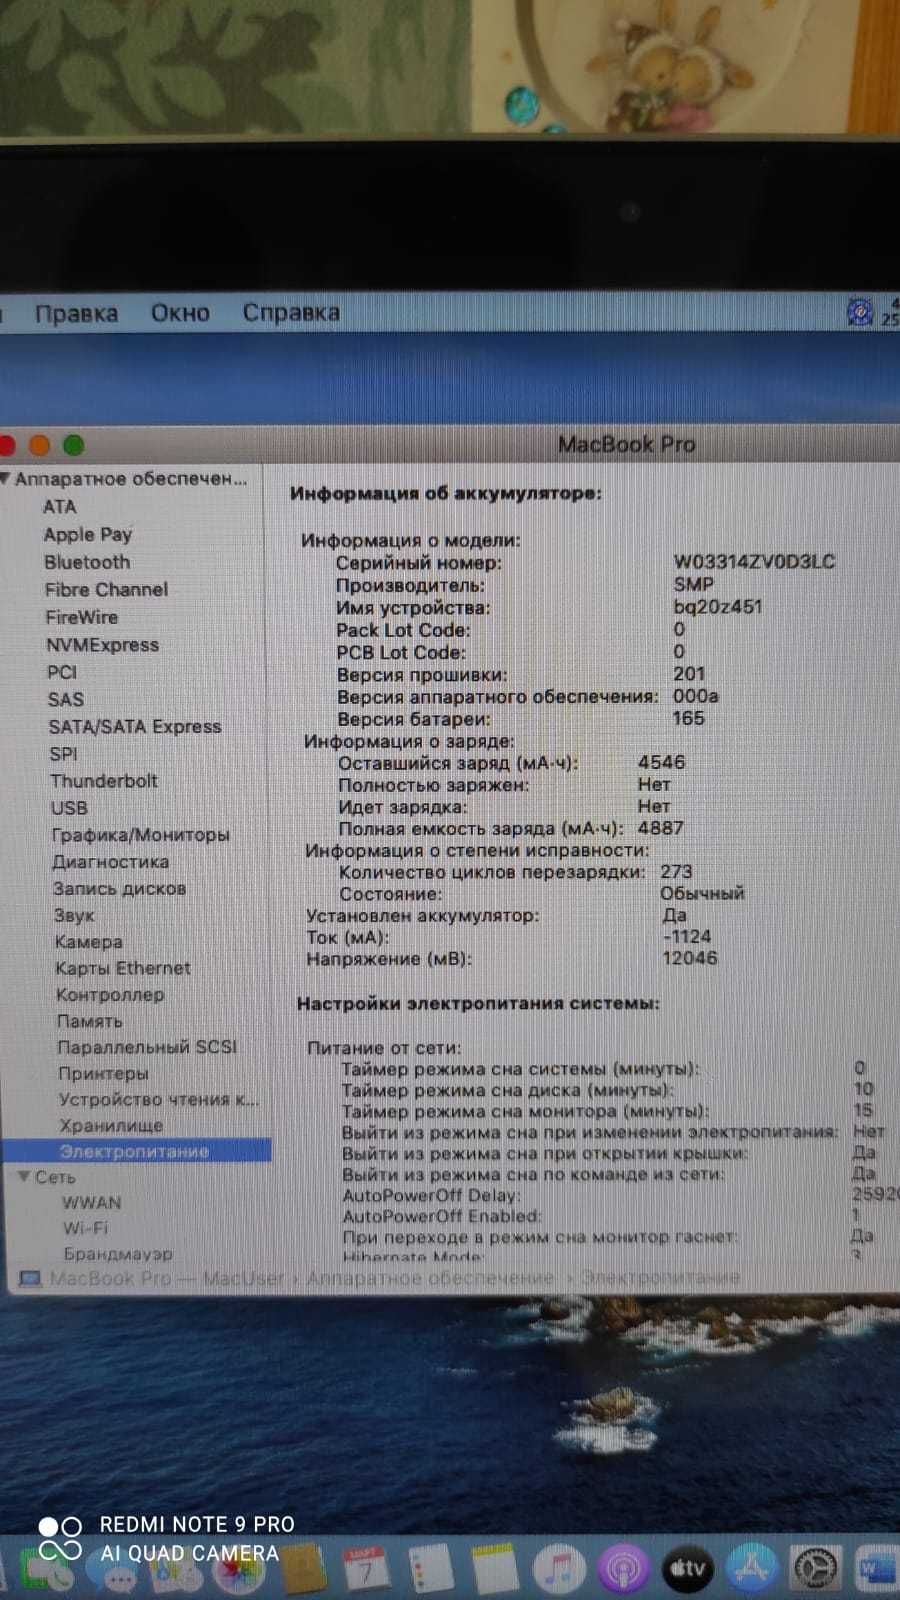 MacBook Pro Unibody |Американец |Core i5 |13" |MD101LL/A|Mid 2012